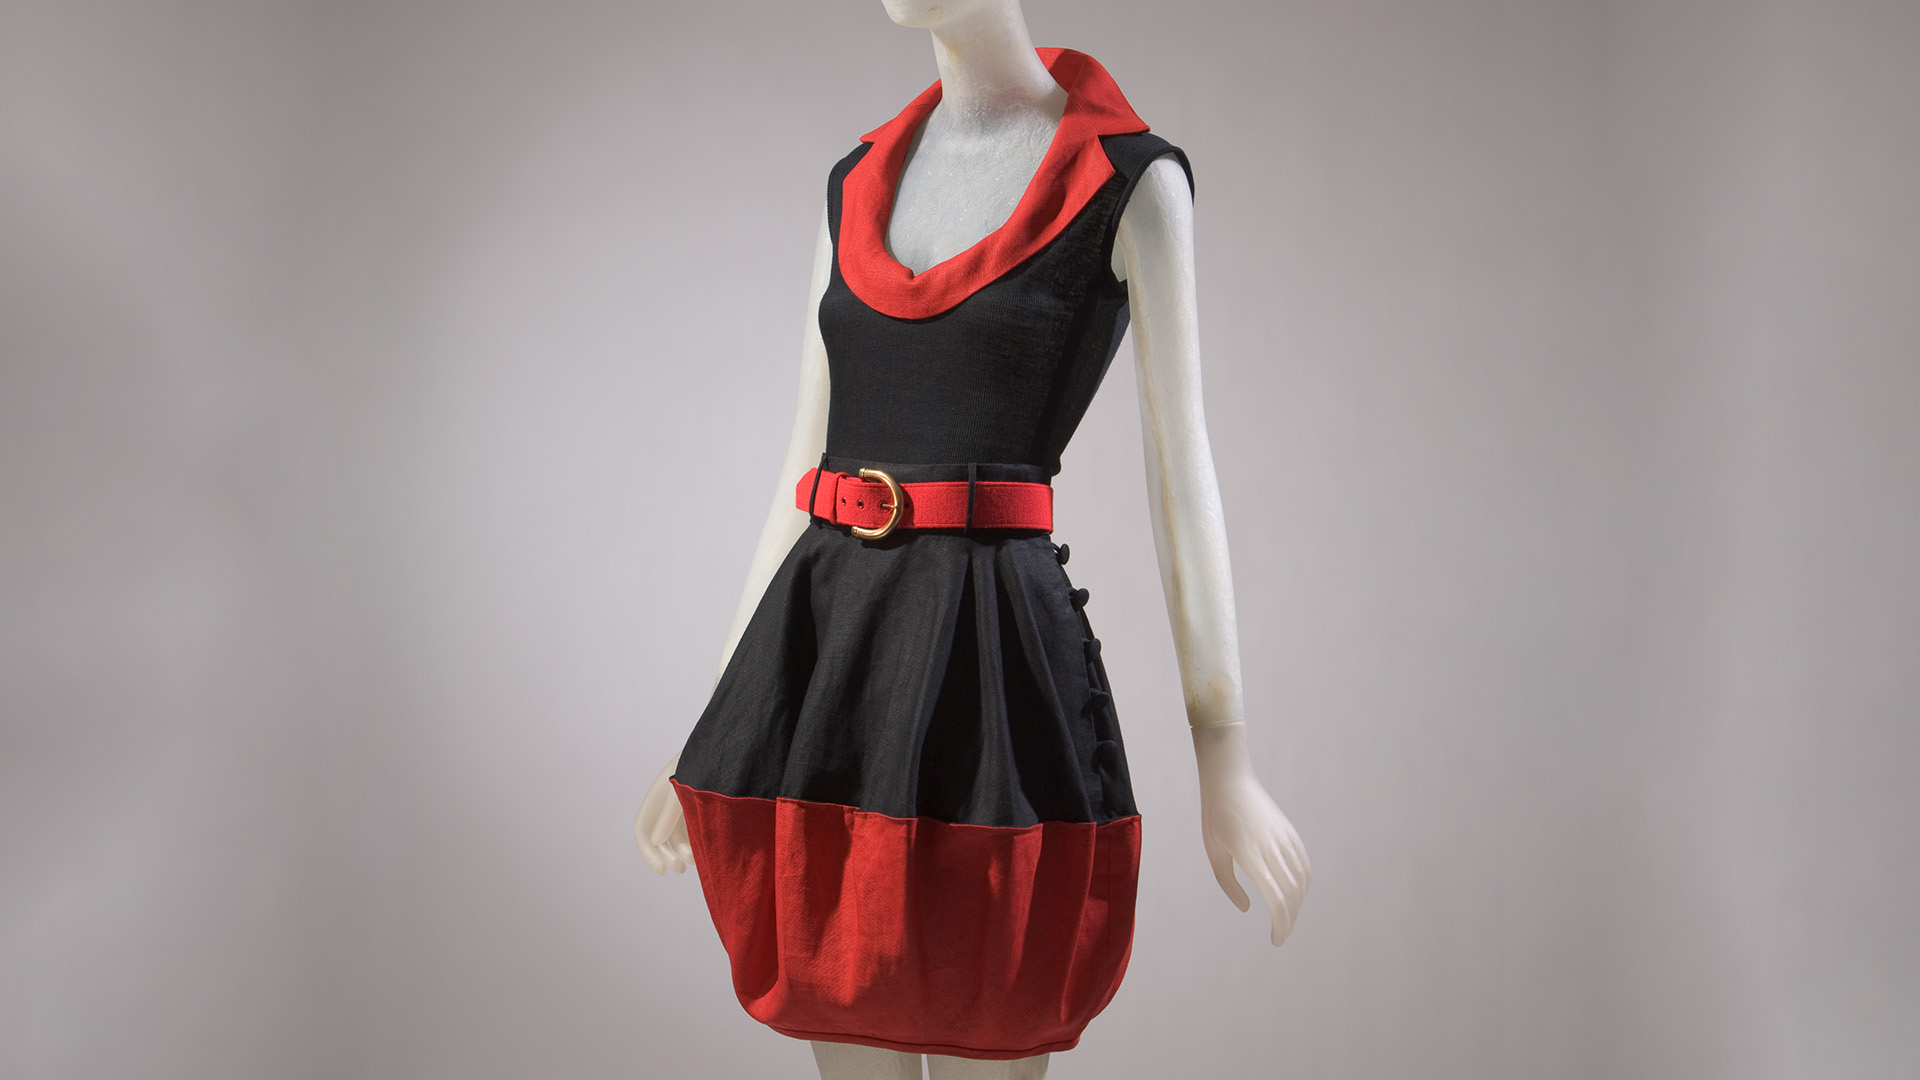 Maniquí vestida con una ensamble rojo y negro sin mangas, falda con cinturón y blusa con escote redondo